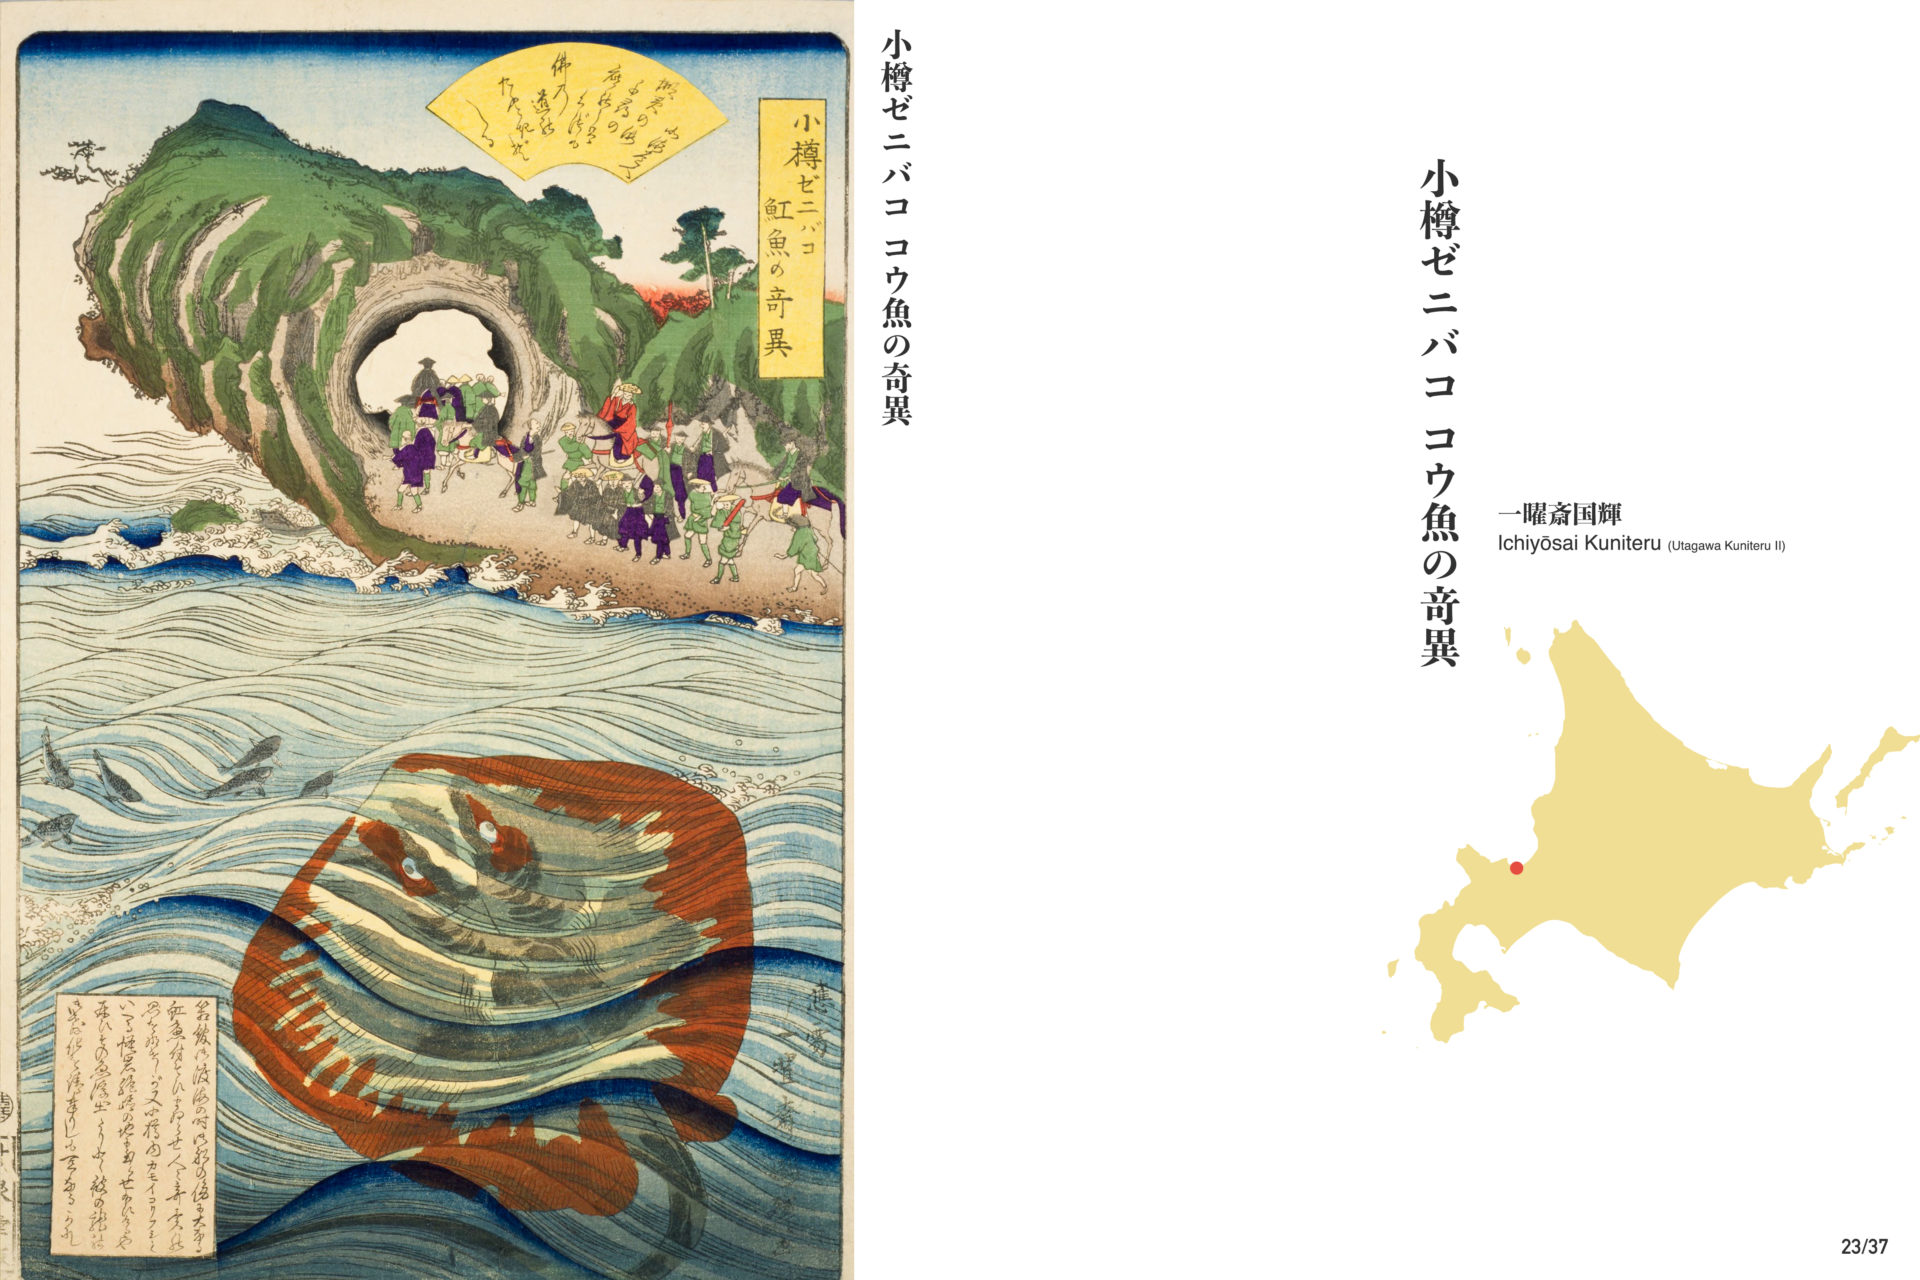 北海道図絵1871 復刻版: 東本願寺北海道開拓錦絵 小樽ゼニバコ 魟魚の奇異